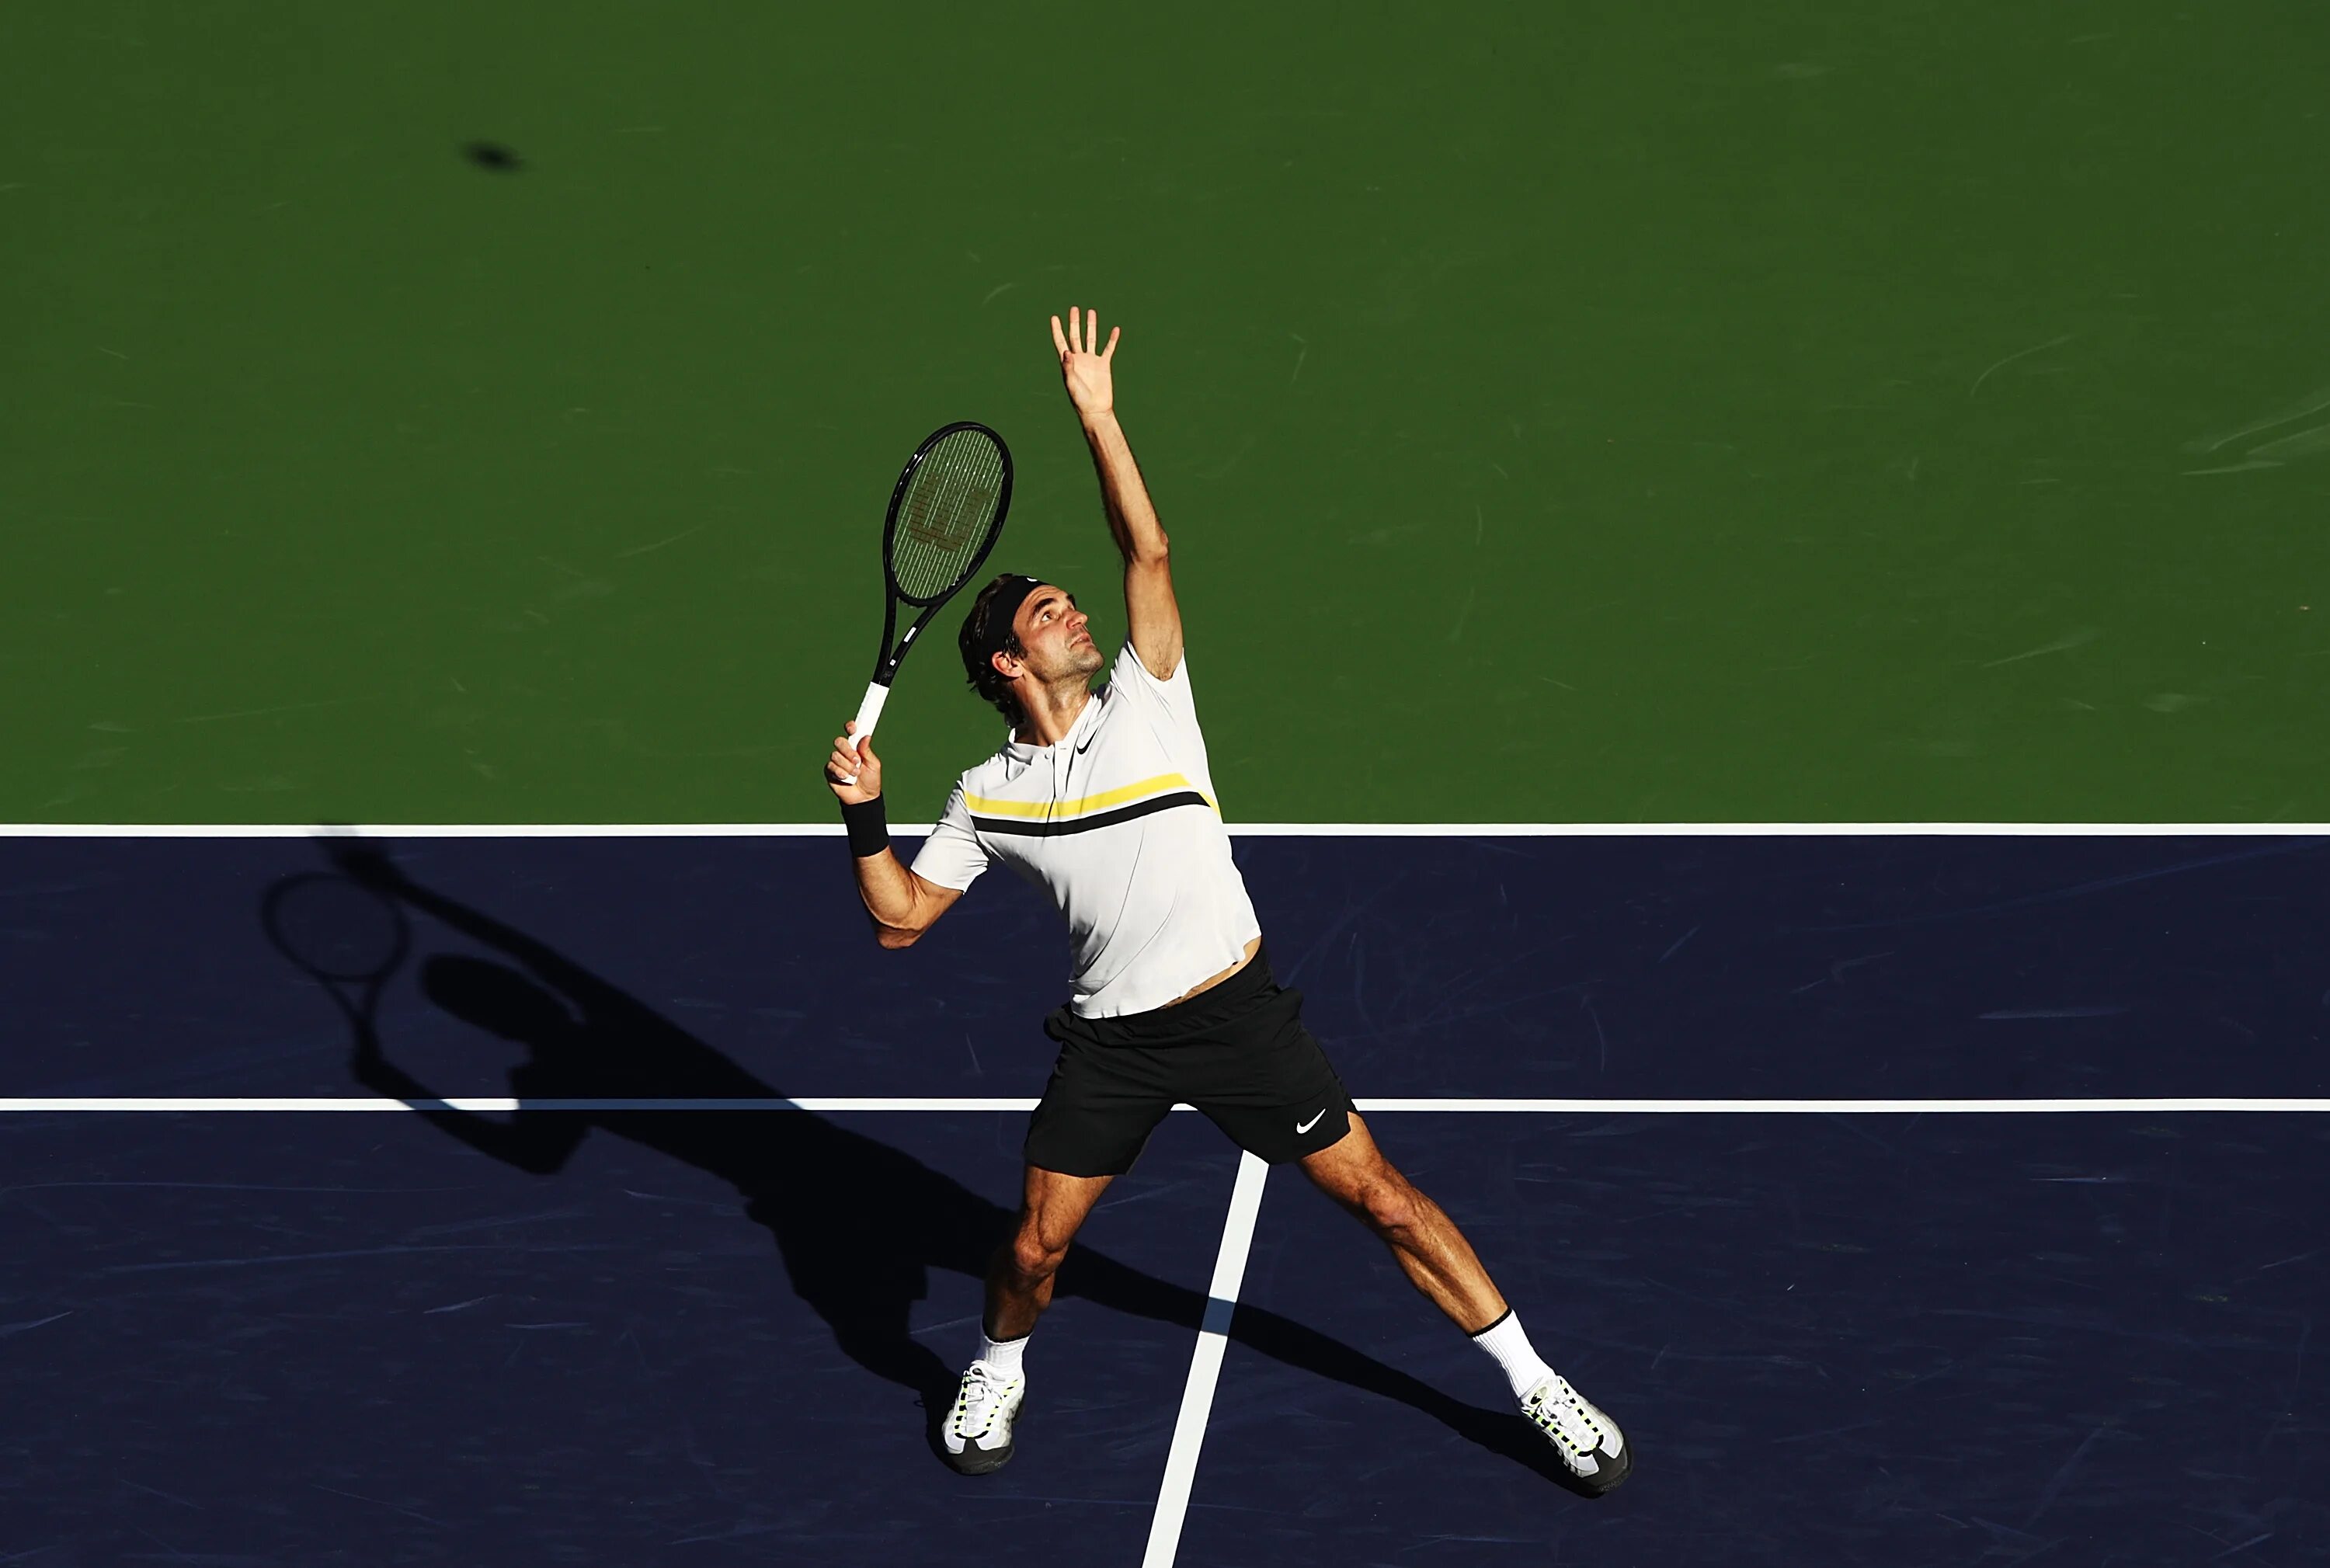 Первый удар в теннисе 6. Теннис удары Федерер. Федерер Роджер удар слева. Удар смэш в большом теннисе. Роджер Федерер удар слета.